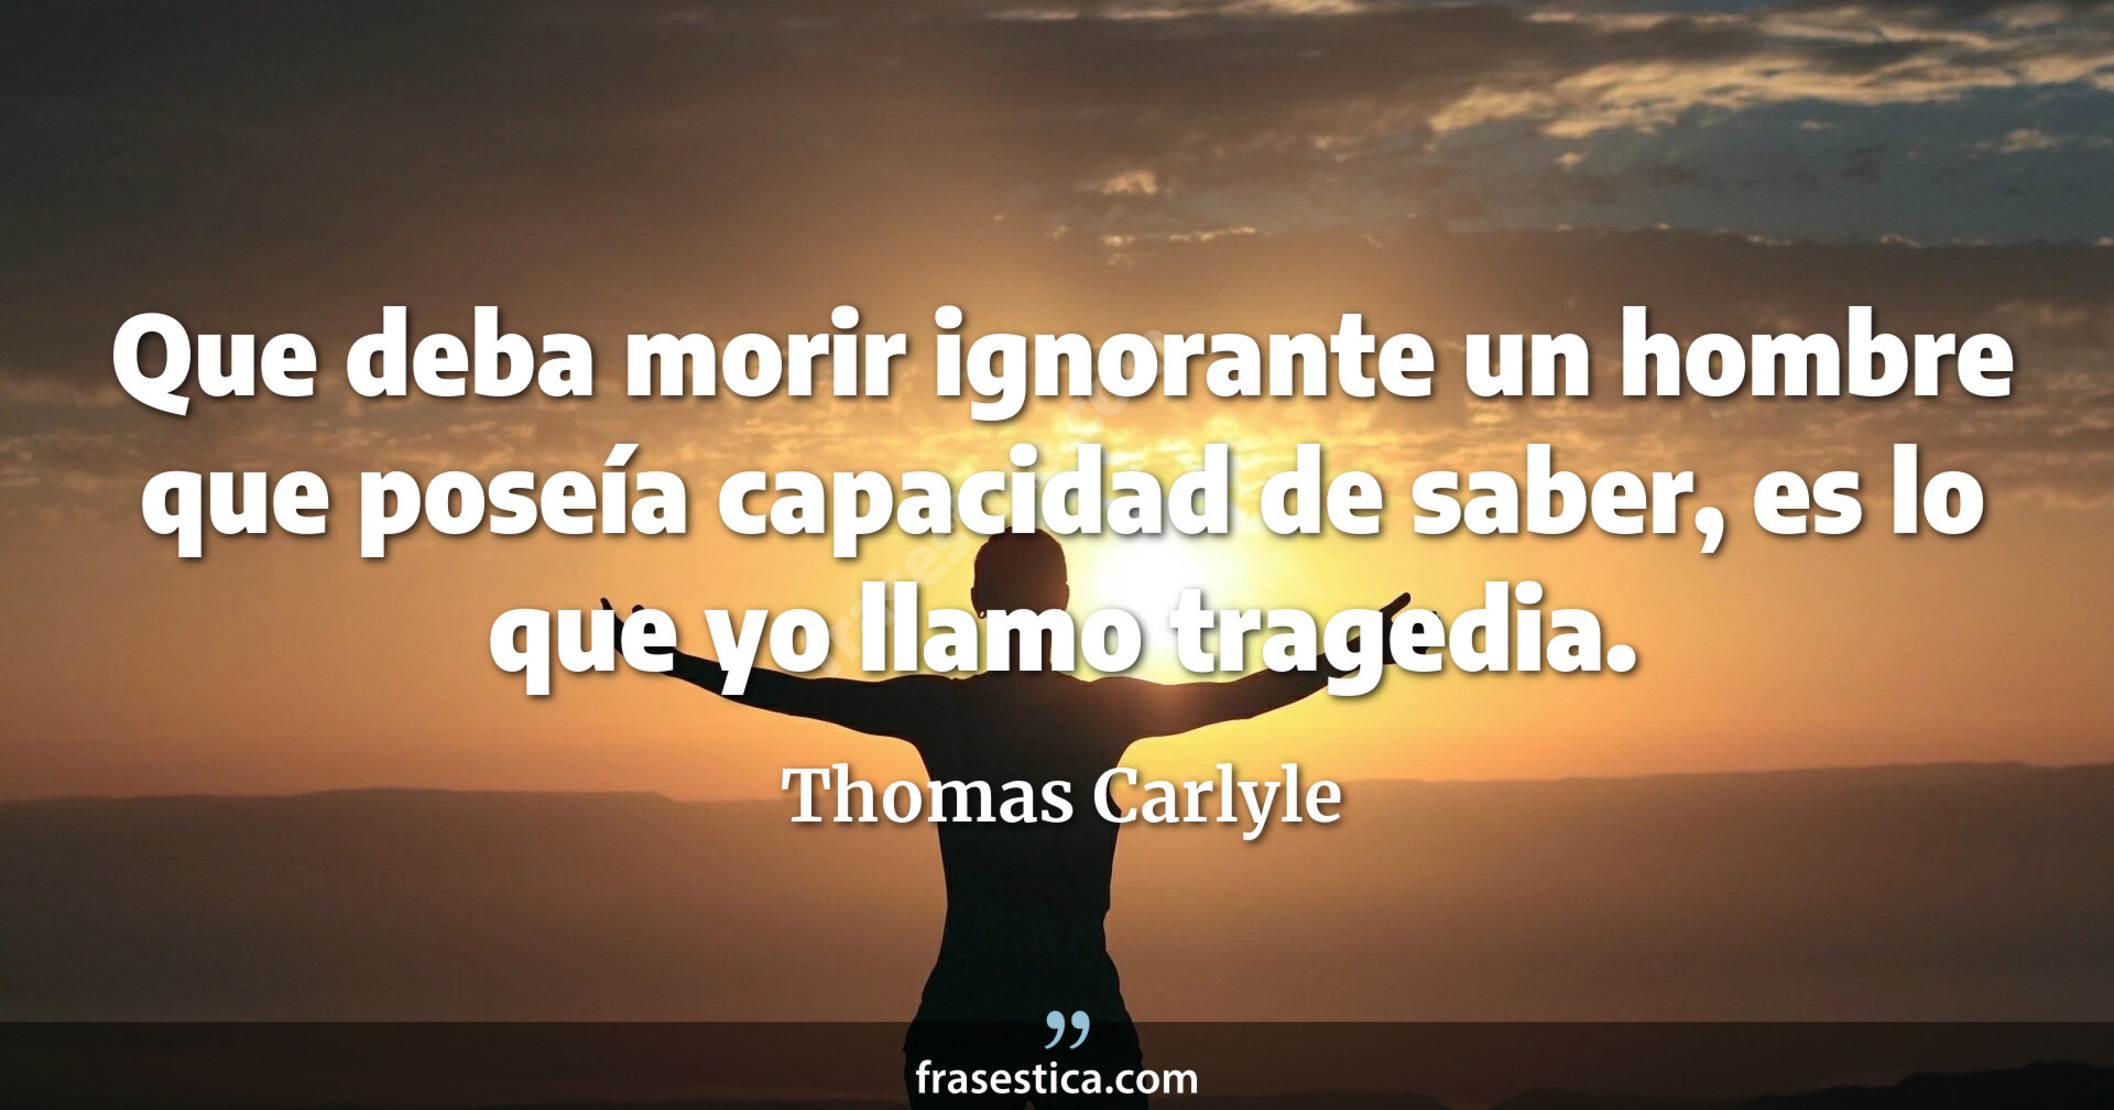 Que deba morir ignorante un hombre que poseía capacidad de saber, es lo que yo llamo tragedia. - Thomas Carlyle